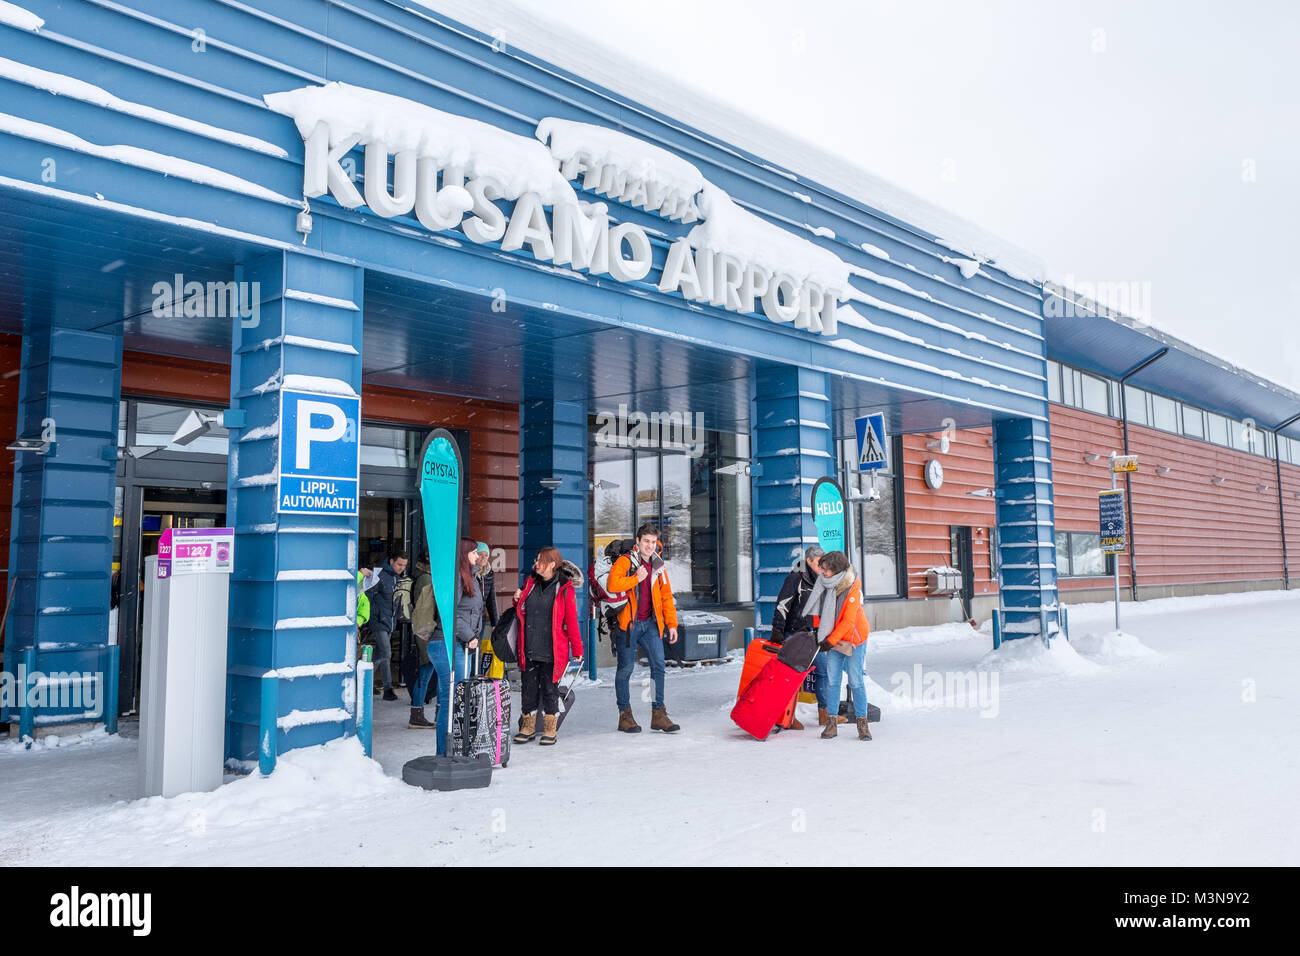 Kuusamo airport in Finland, winter Stock Photo